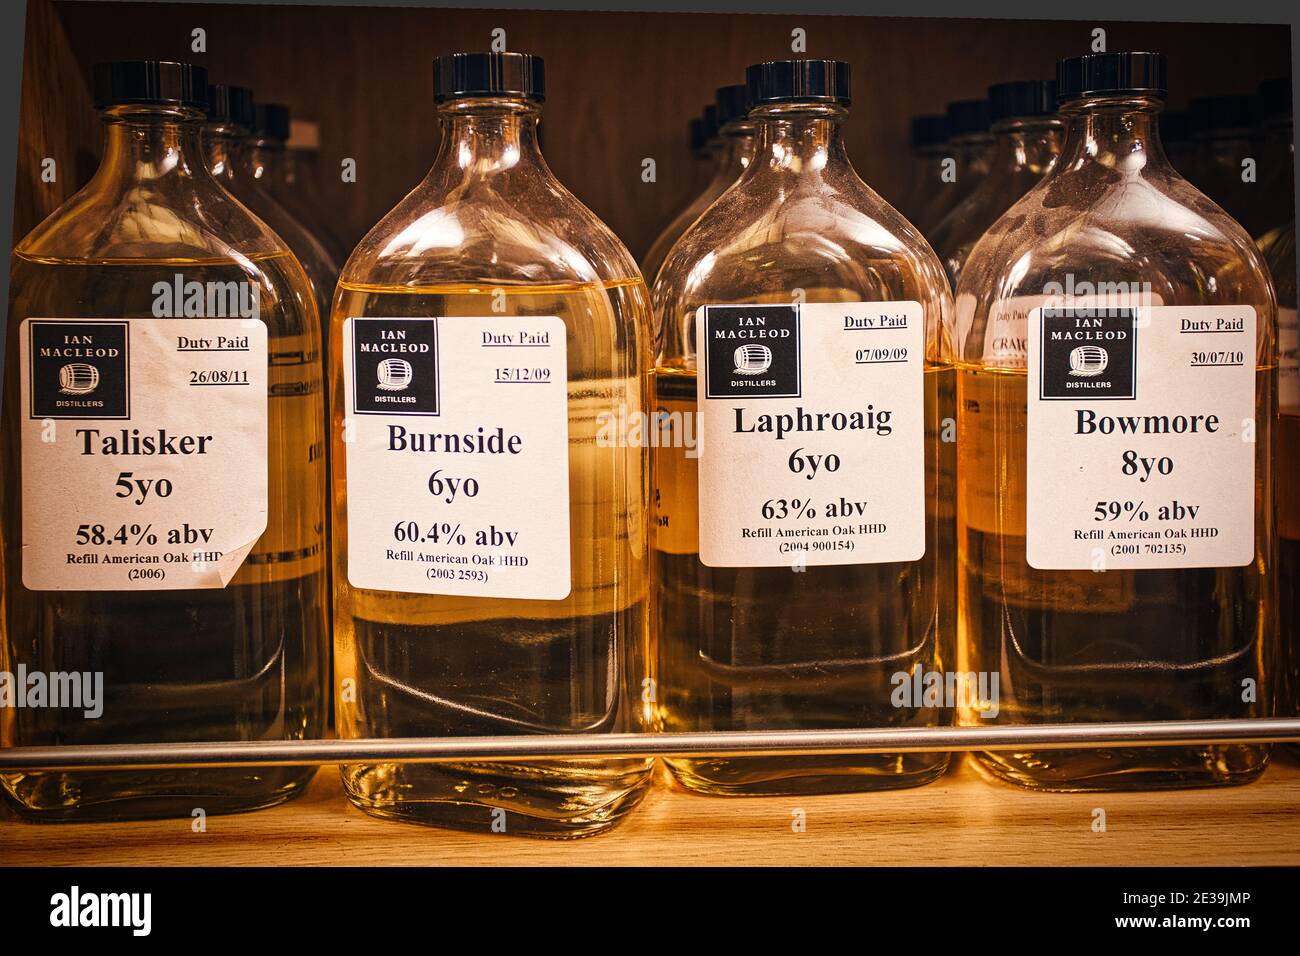 Ian Macleod Blending and Bottling Center ,Scotland Stock Photo